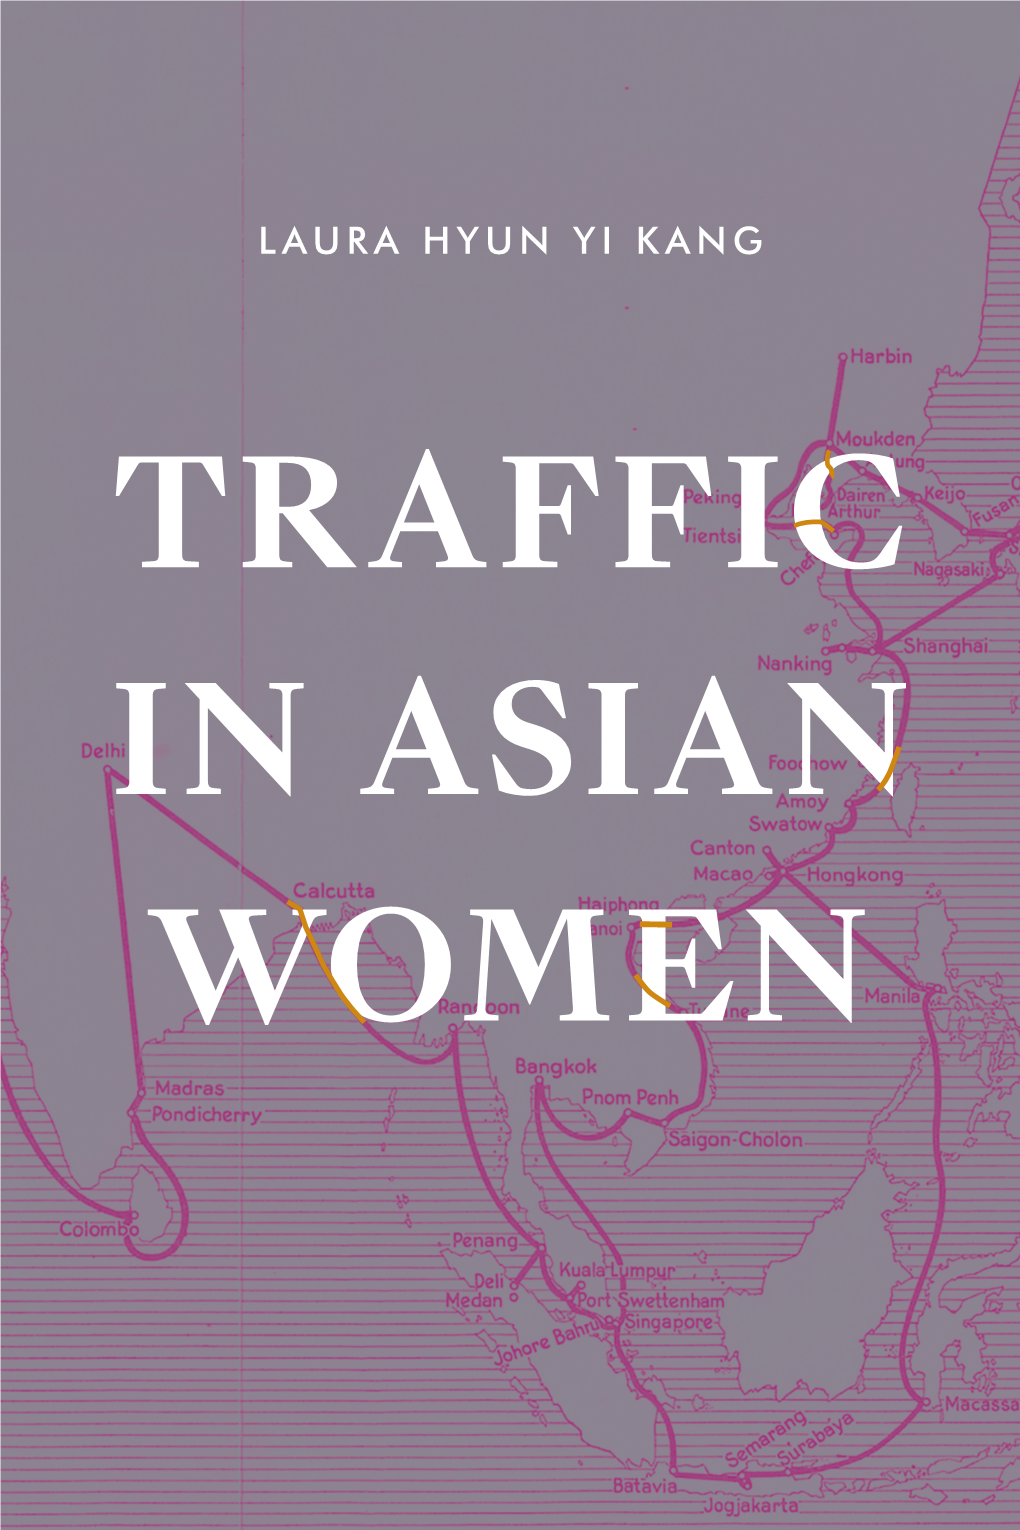 Traffic in Asian Women